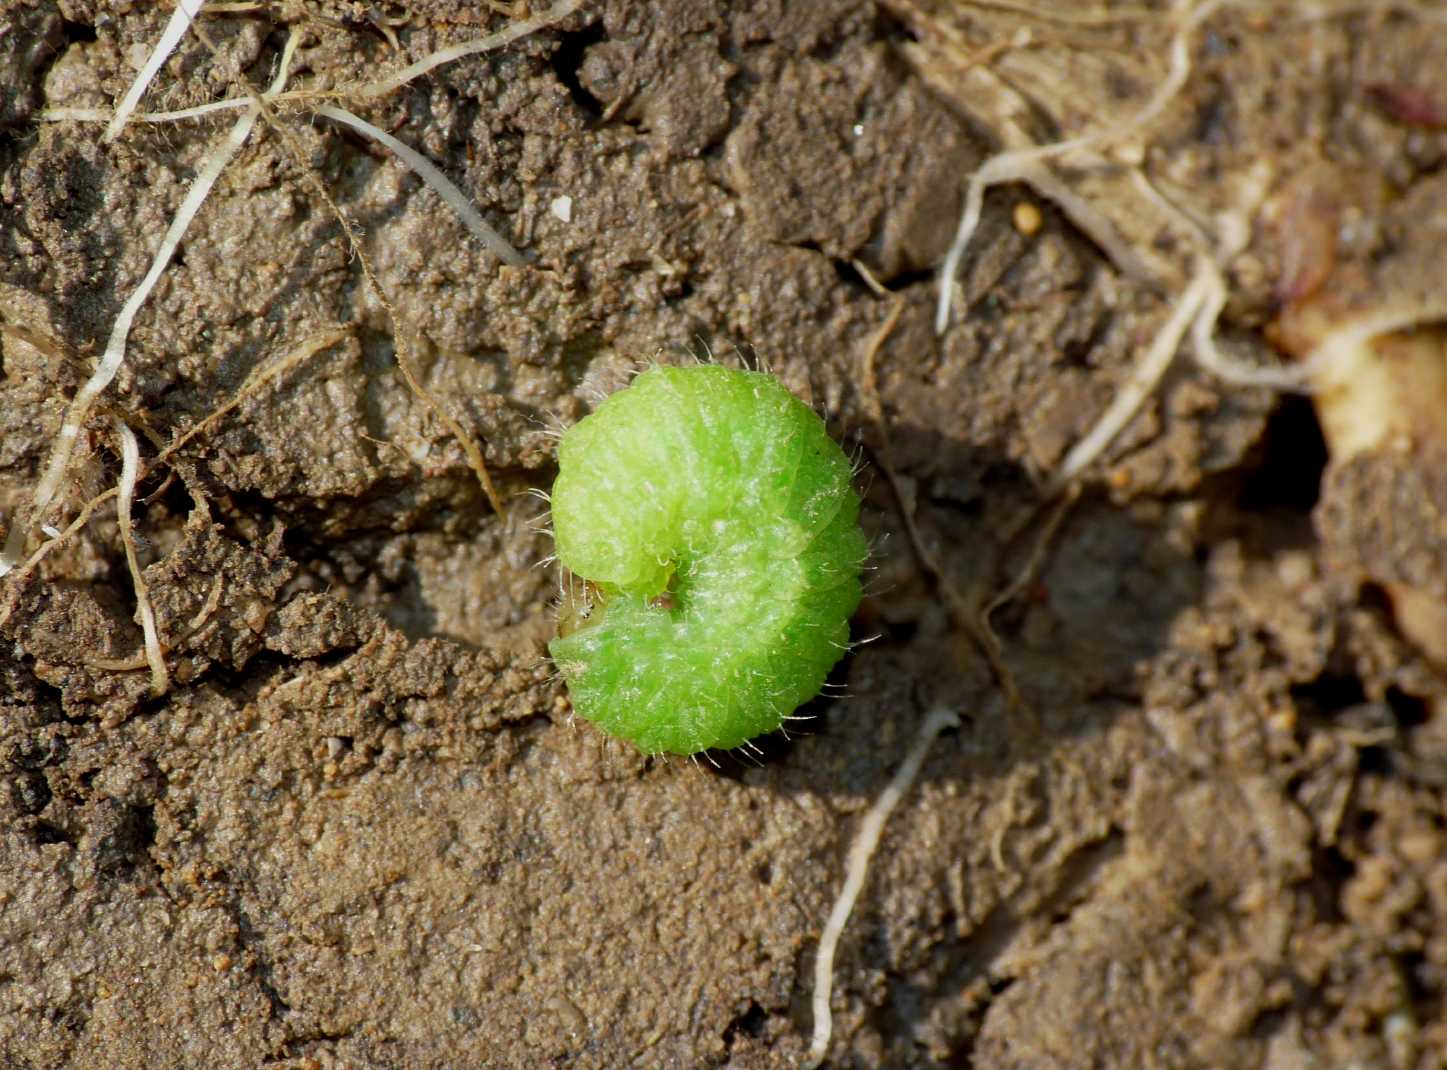 Larvetta verde (Curculionidae?)